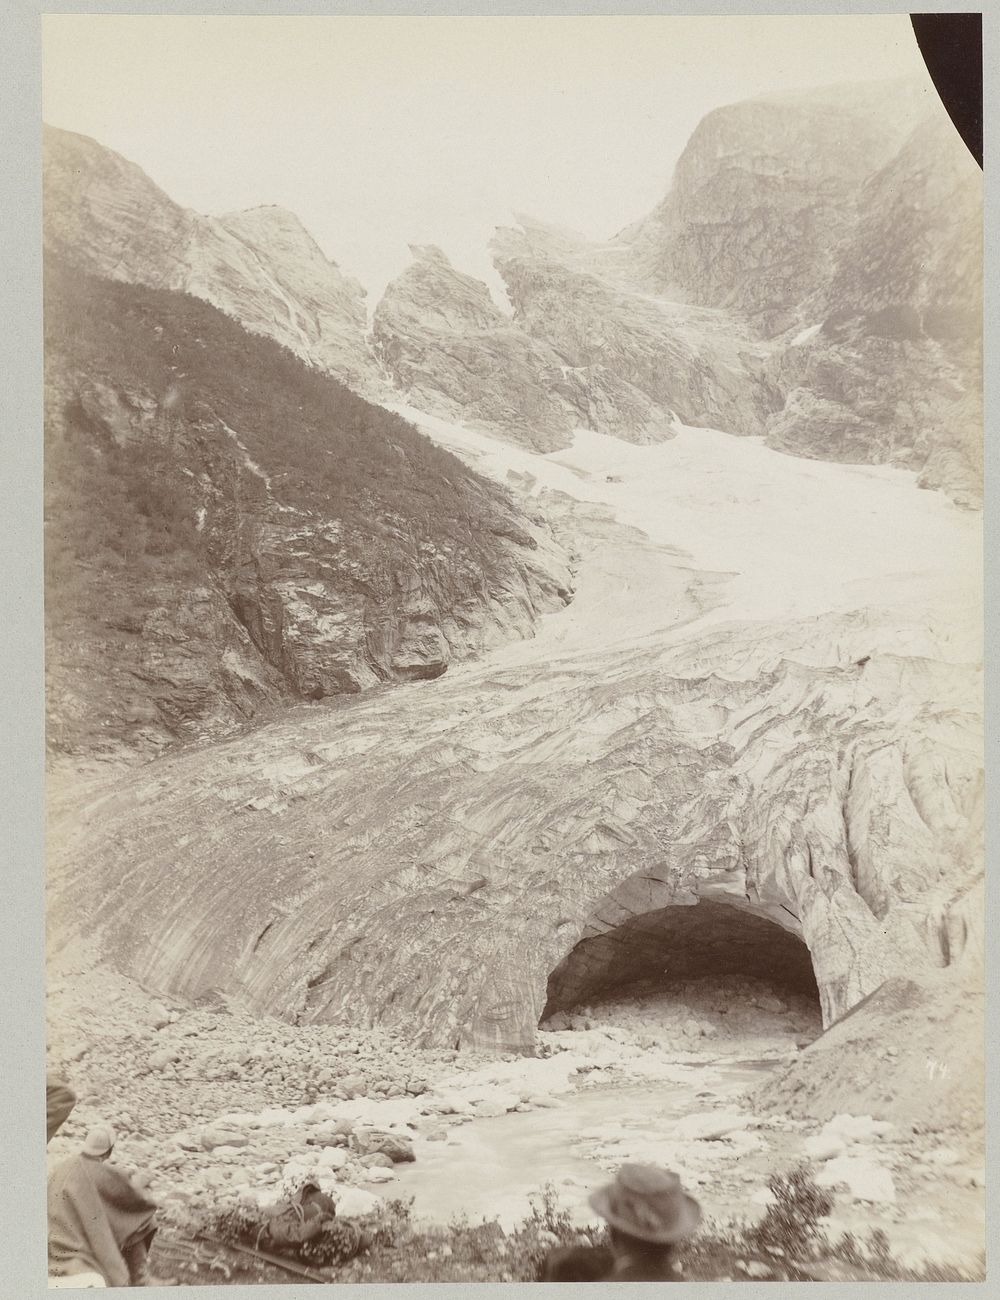 Keizer Wilhelm II aan de voet van een Noorse gletsjer (1889) by Paul Güssfeldt and Carl Saltzmann